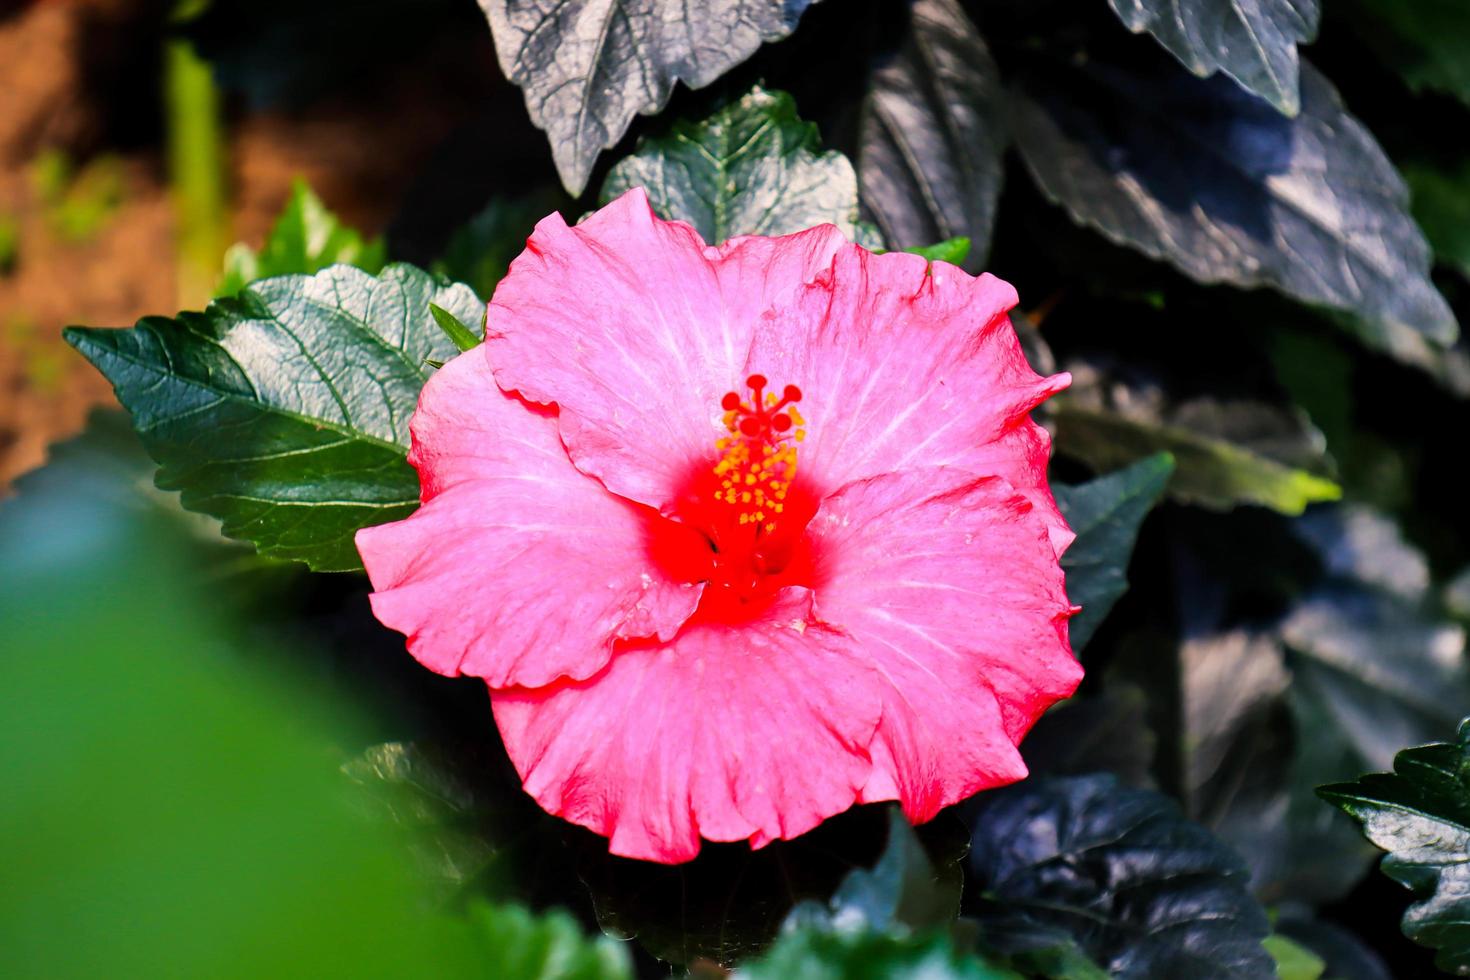 flor de hibisco hibiscus rosa-sinensis l es un arbusto de la familia de las malváceas originario del este de Asia y ampliamente cultivado como planta ornamental en regiones tropicales y subtropicales. foto